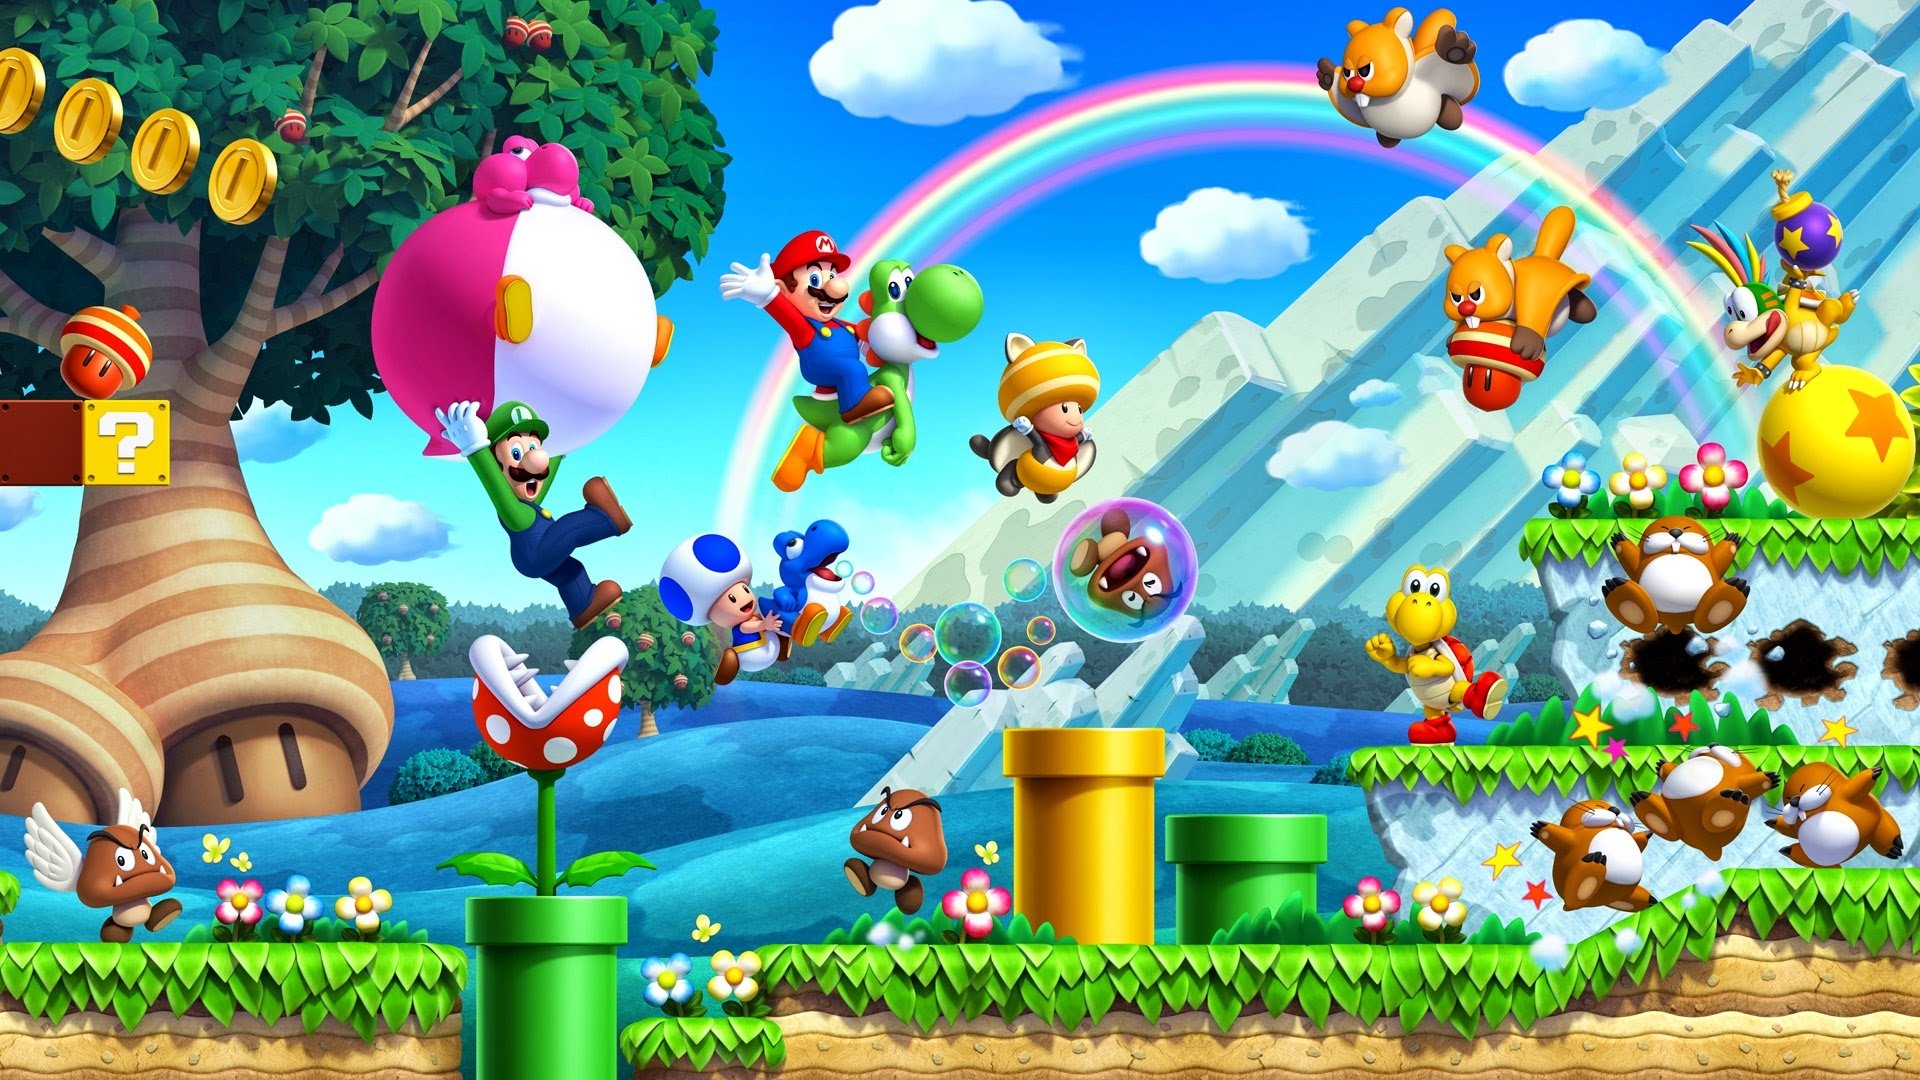 ข่าวลือ New Super Mario Bros. U อาจจะมาลงให้กับ Nintendo Switch